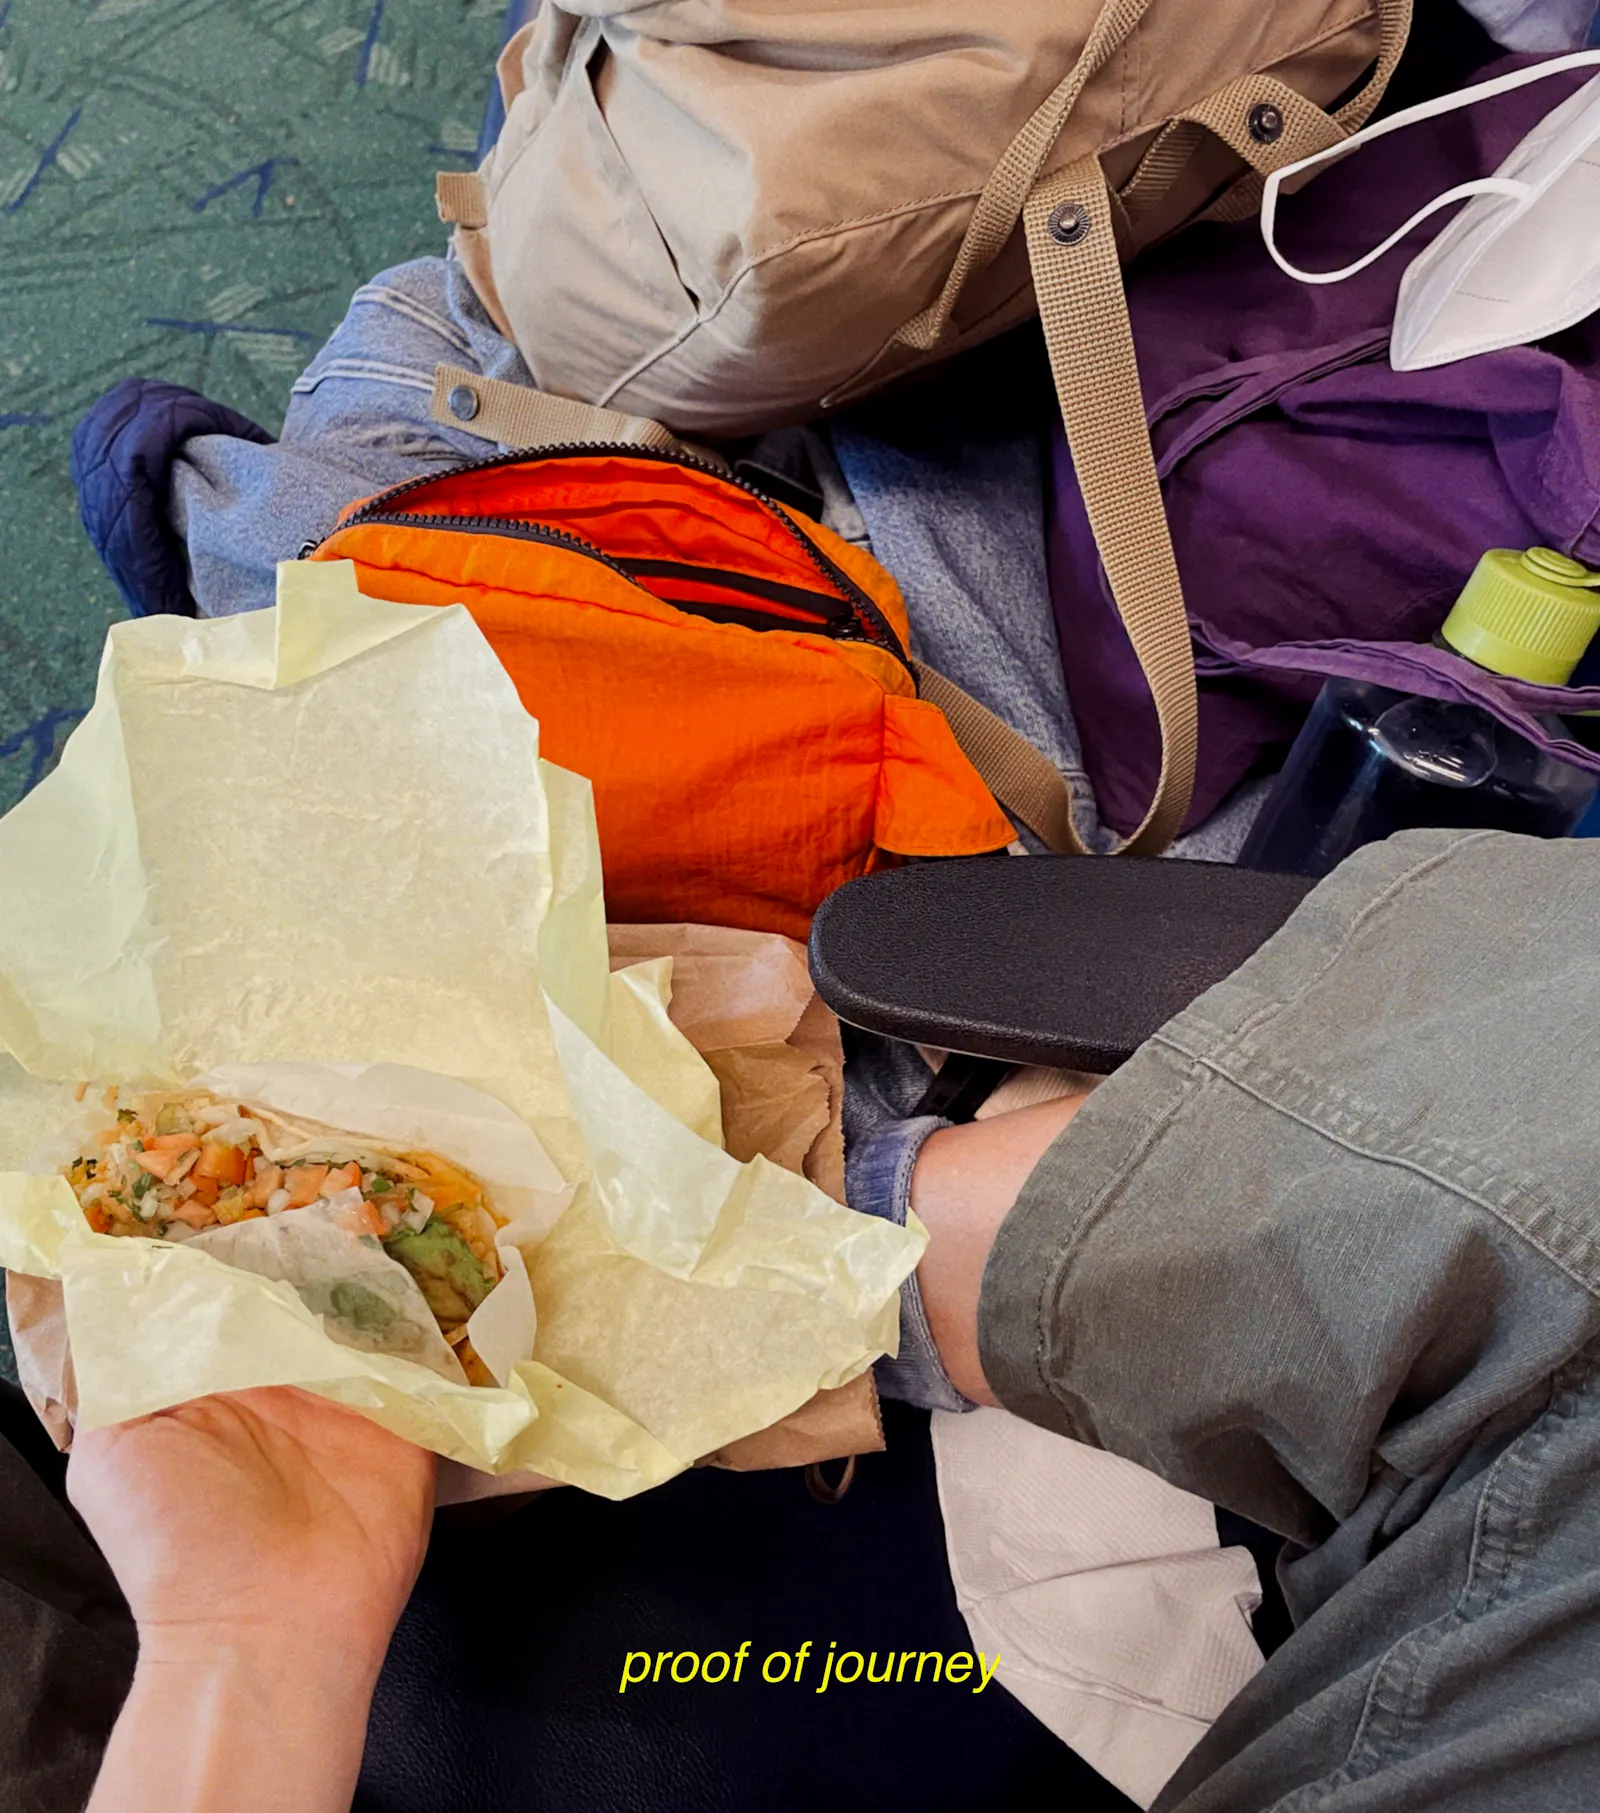 Von oben nach unten: Ein Rucksack, eine FFP2-Maske, eine Bauchtasche, ein Stoffbeutel, all das auf einer Jeansjacke, eine Wasserflasche, links Svenjas Hand und darin ein Taco. Unten steht in gelber Schrift "proof of journey"